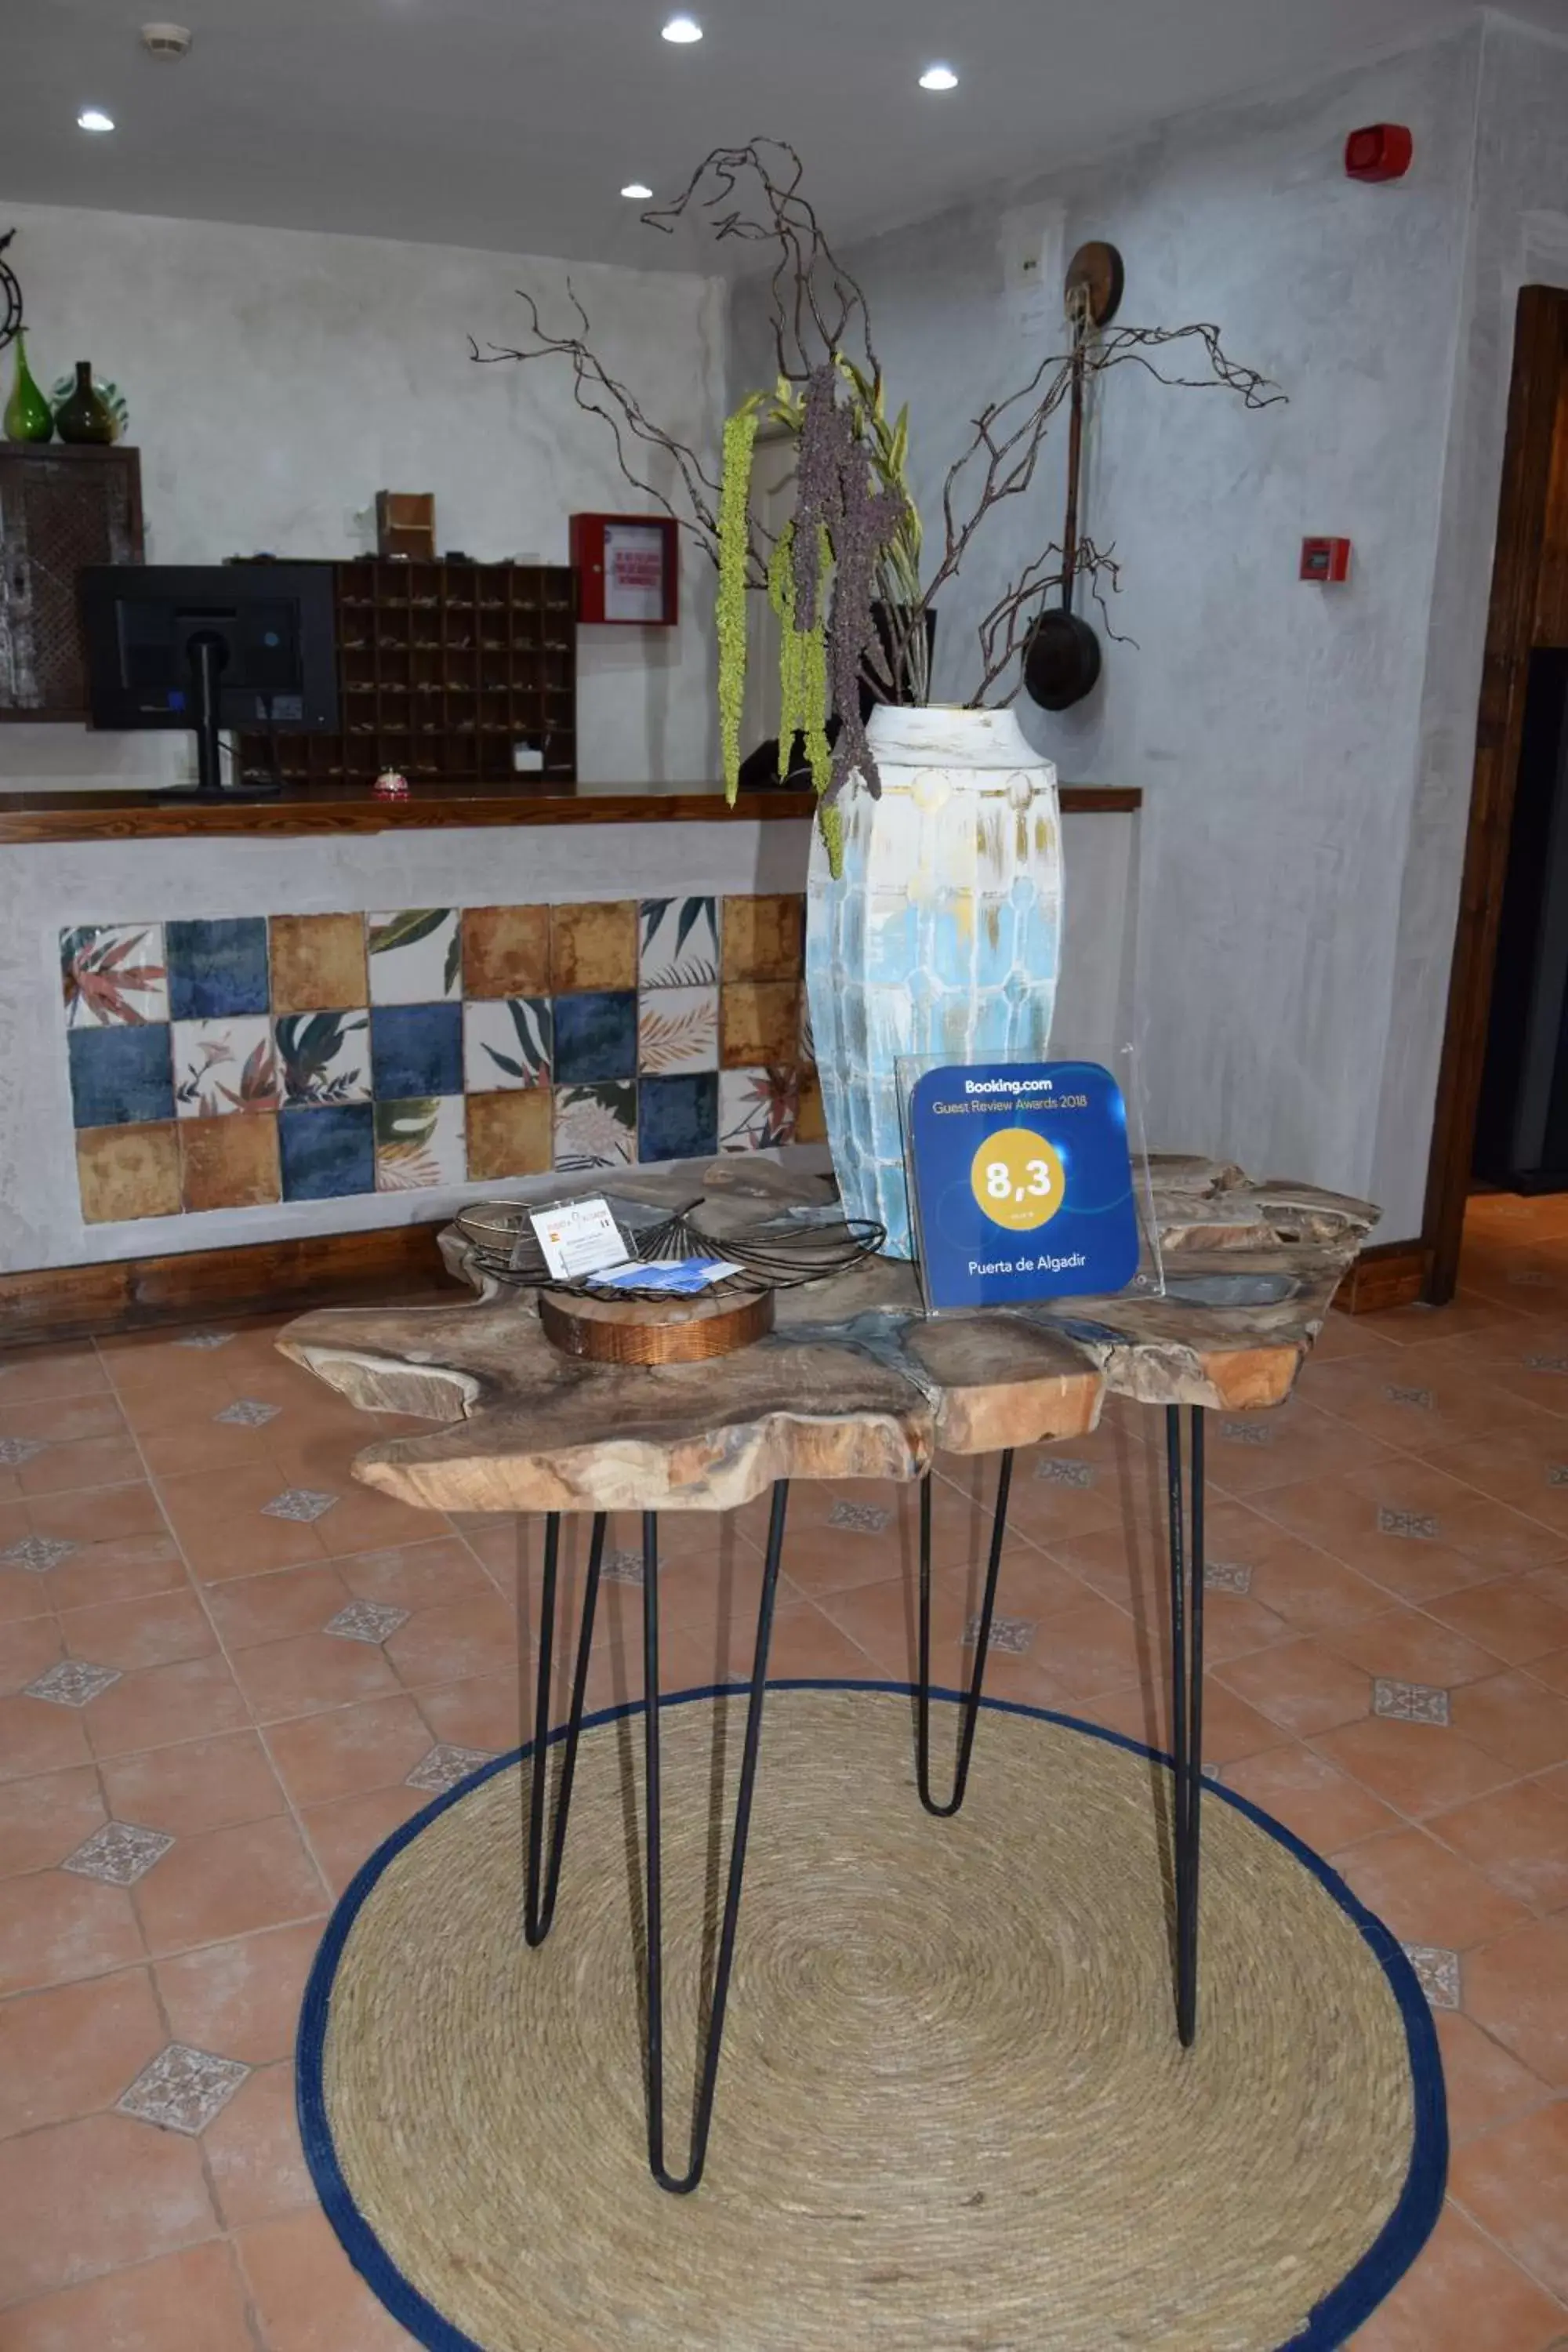 Lobby or reception in Puerta de Algadir